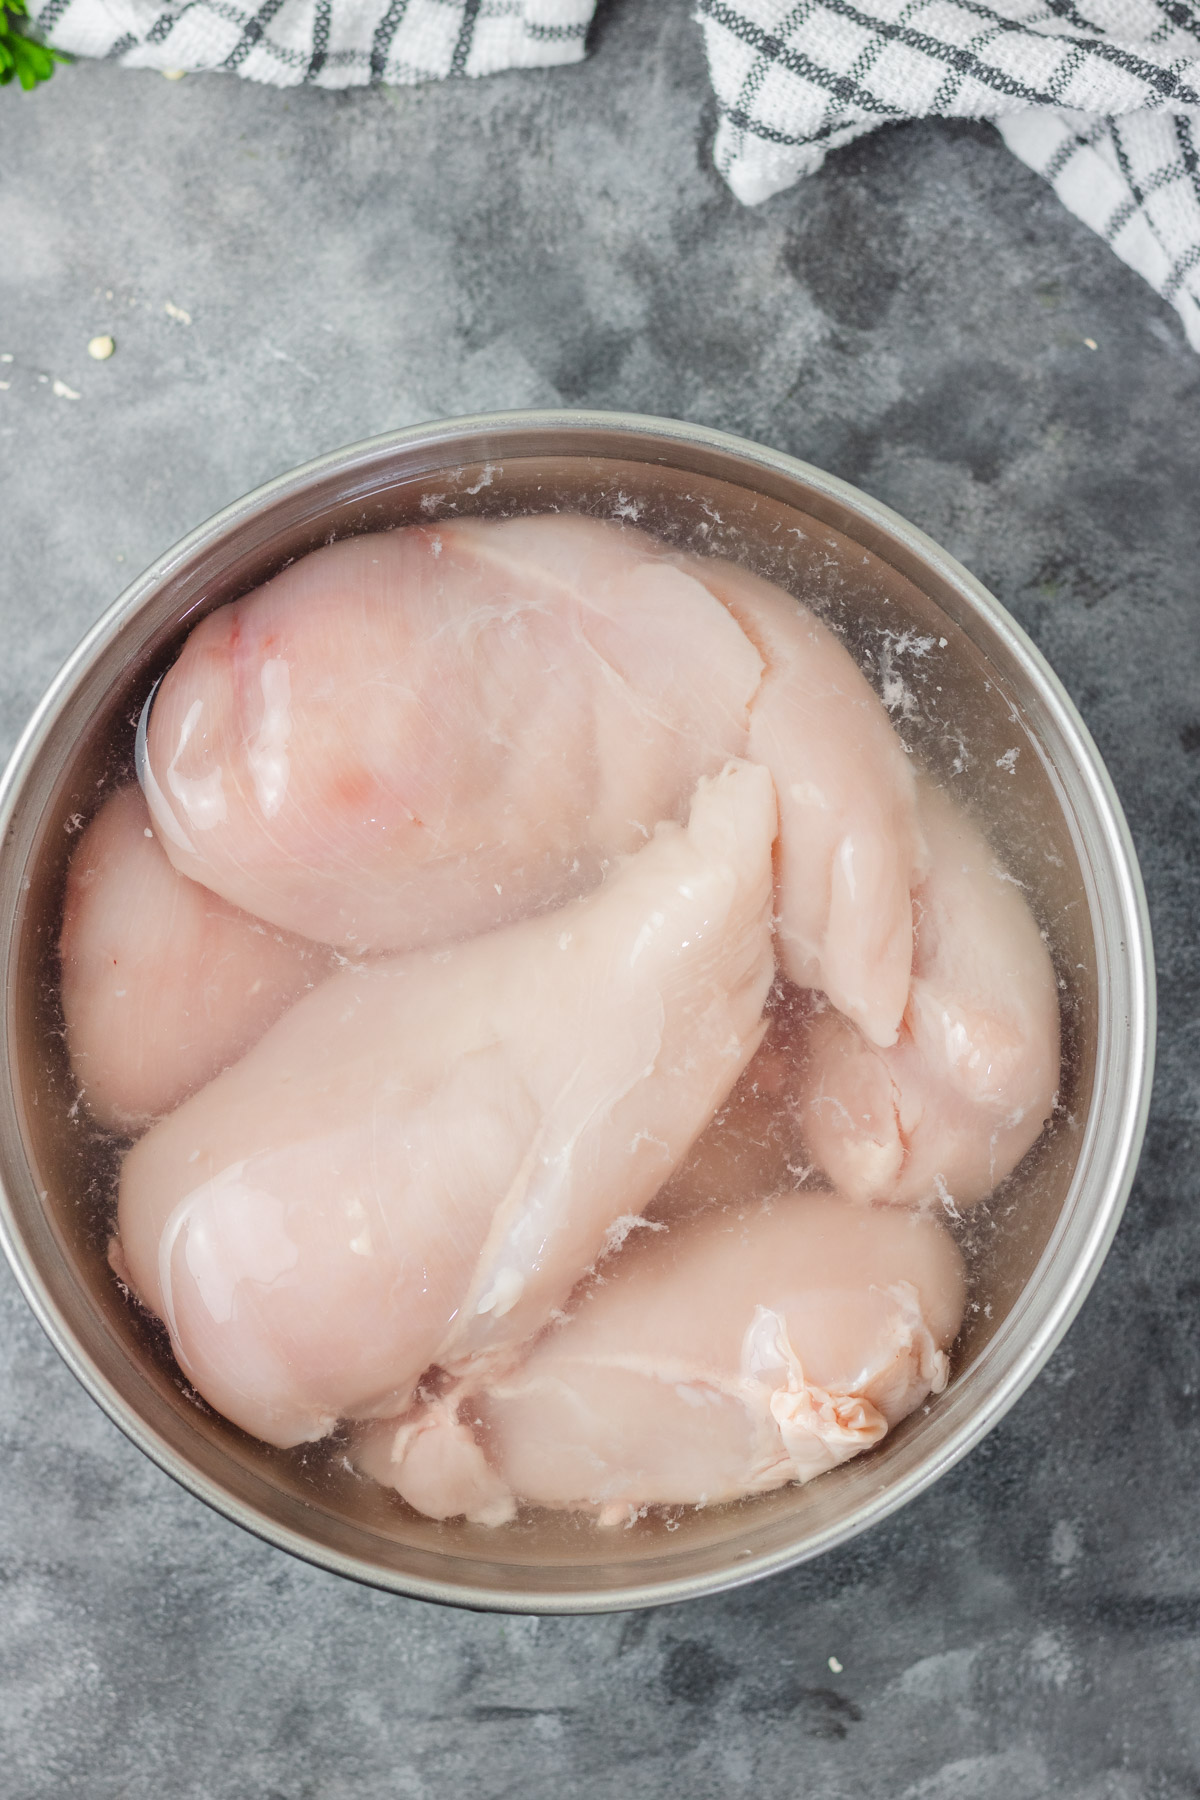 whole chicken breast brining in salt water solution.